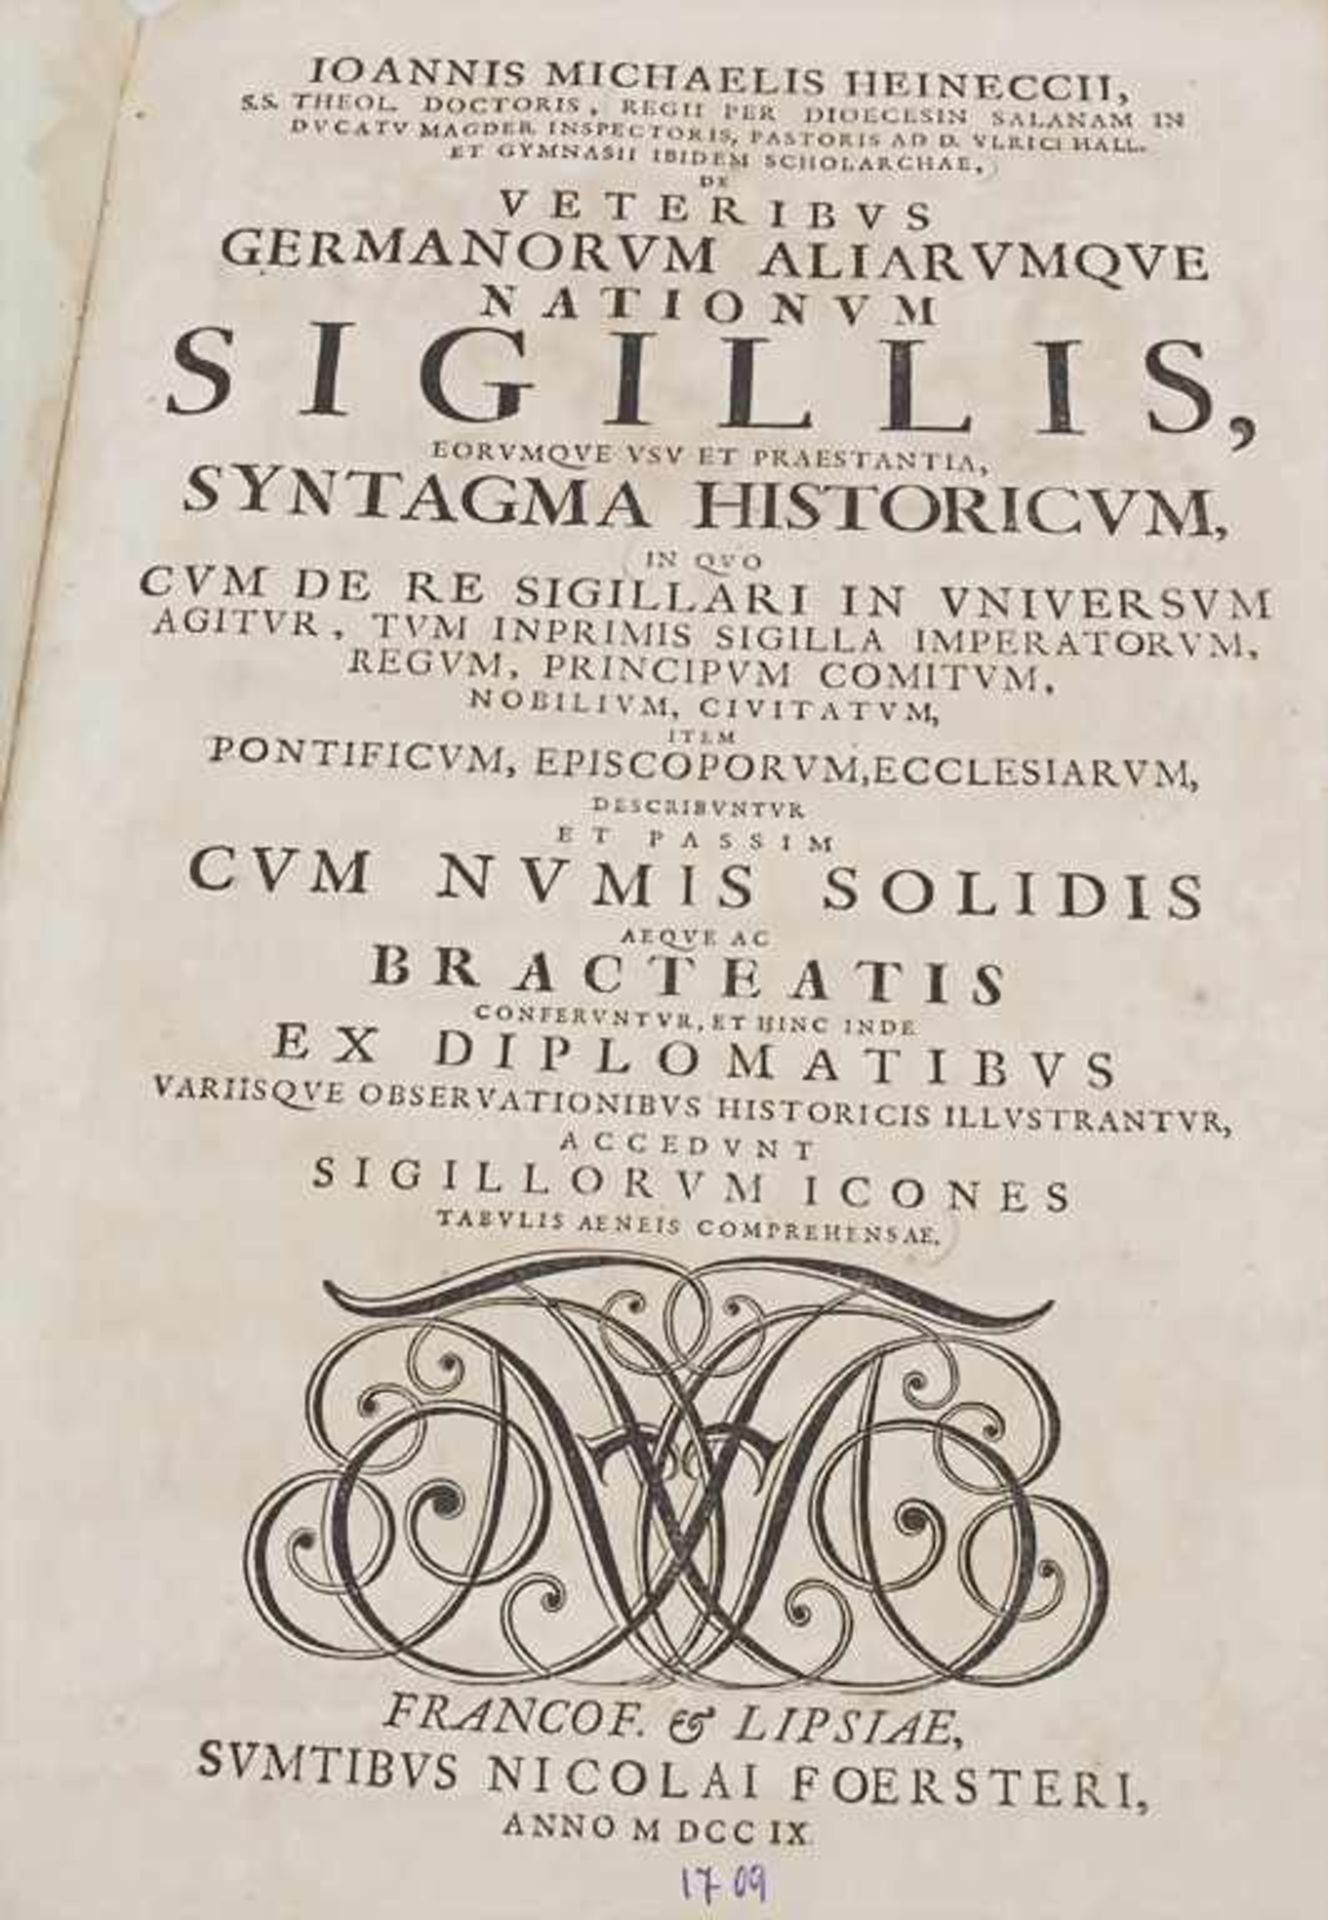 Johann Michael Heineccius, 'Veteribus Germanorum aliarumque nationum sigillis', 1709Umfang: 224 - Image 4 of 4